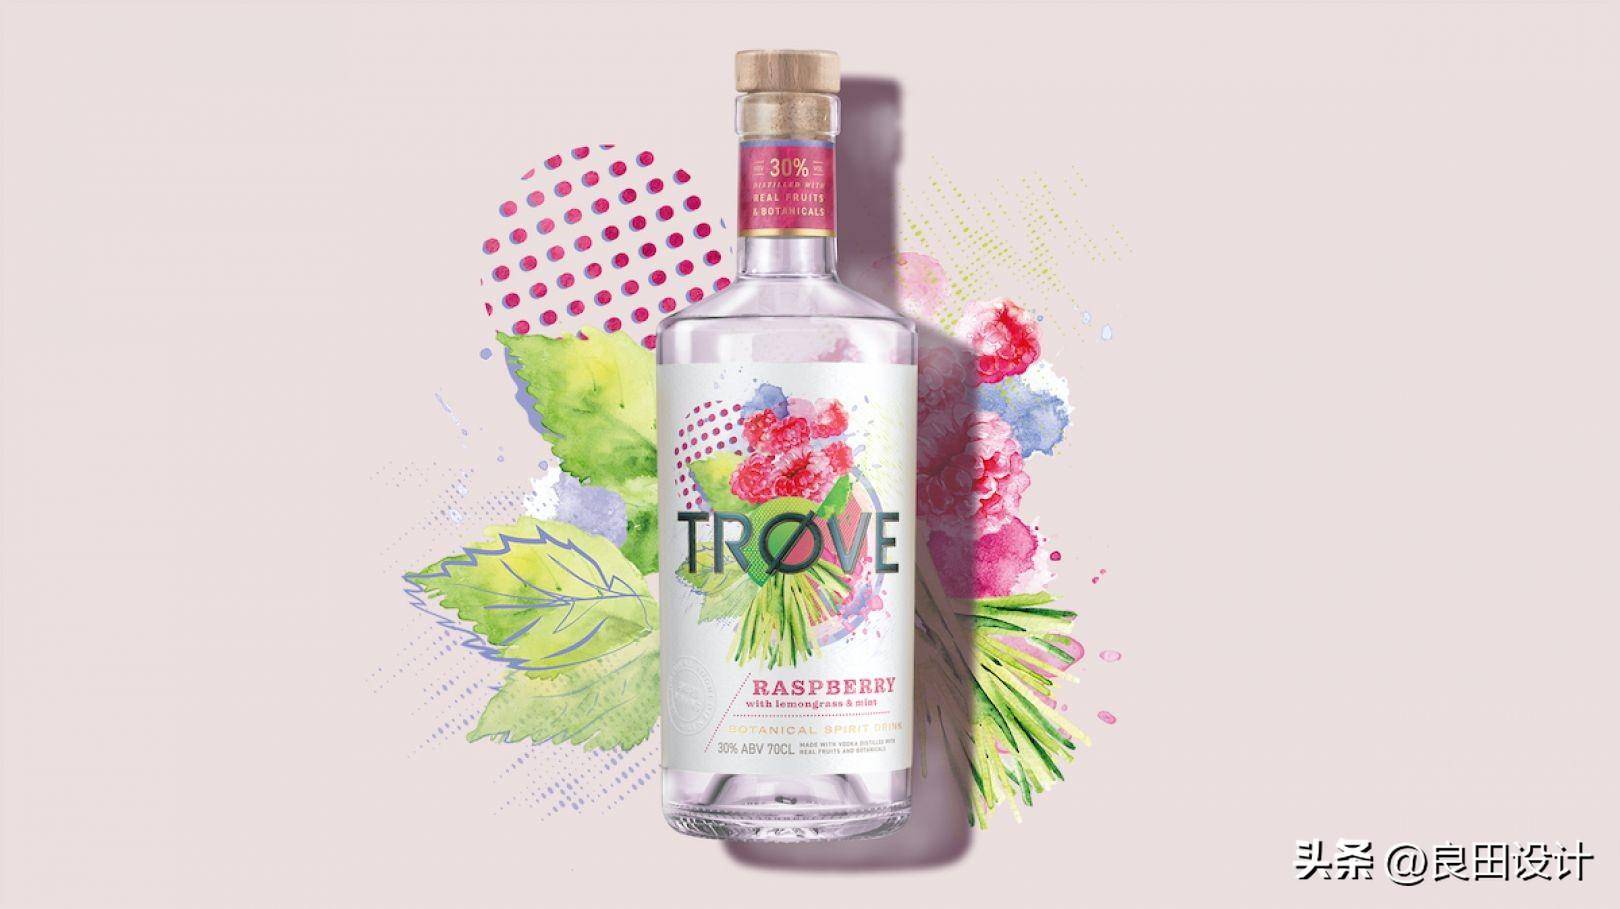 苹果主题插图手绘版:为新的低酒精、低热量烈酒品牌 TRØVE 创作的酒包装设计-第3张图片-太平洋在线下载